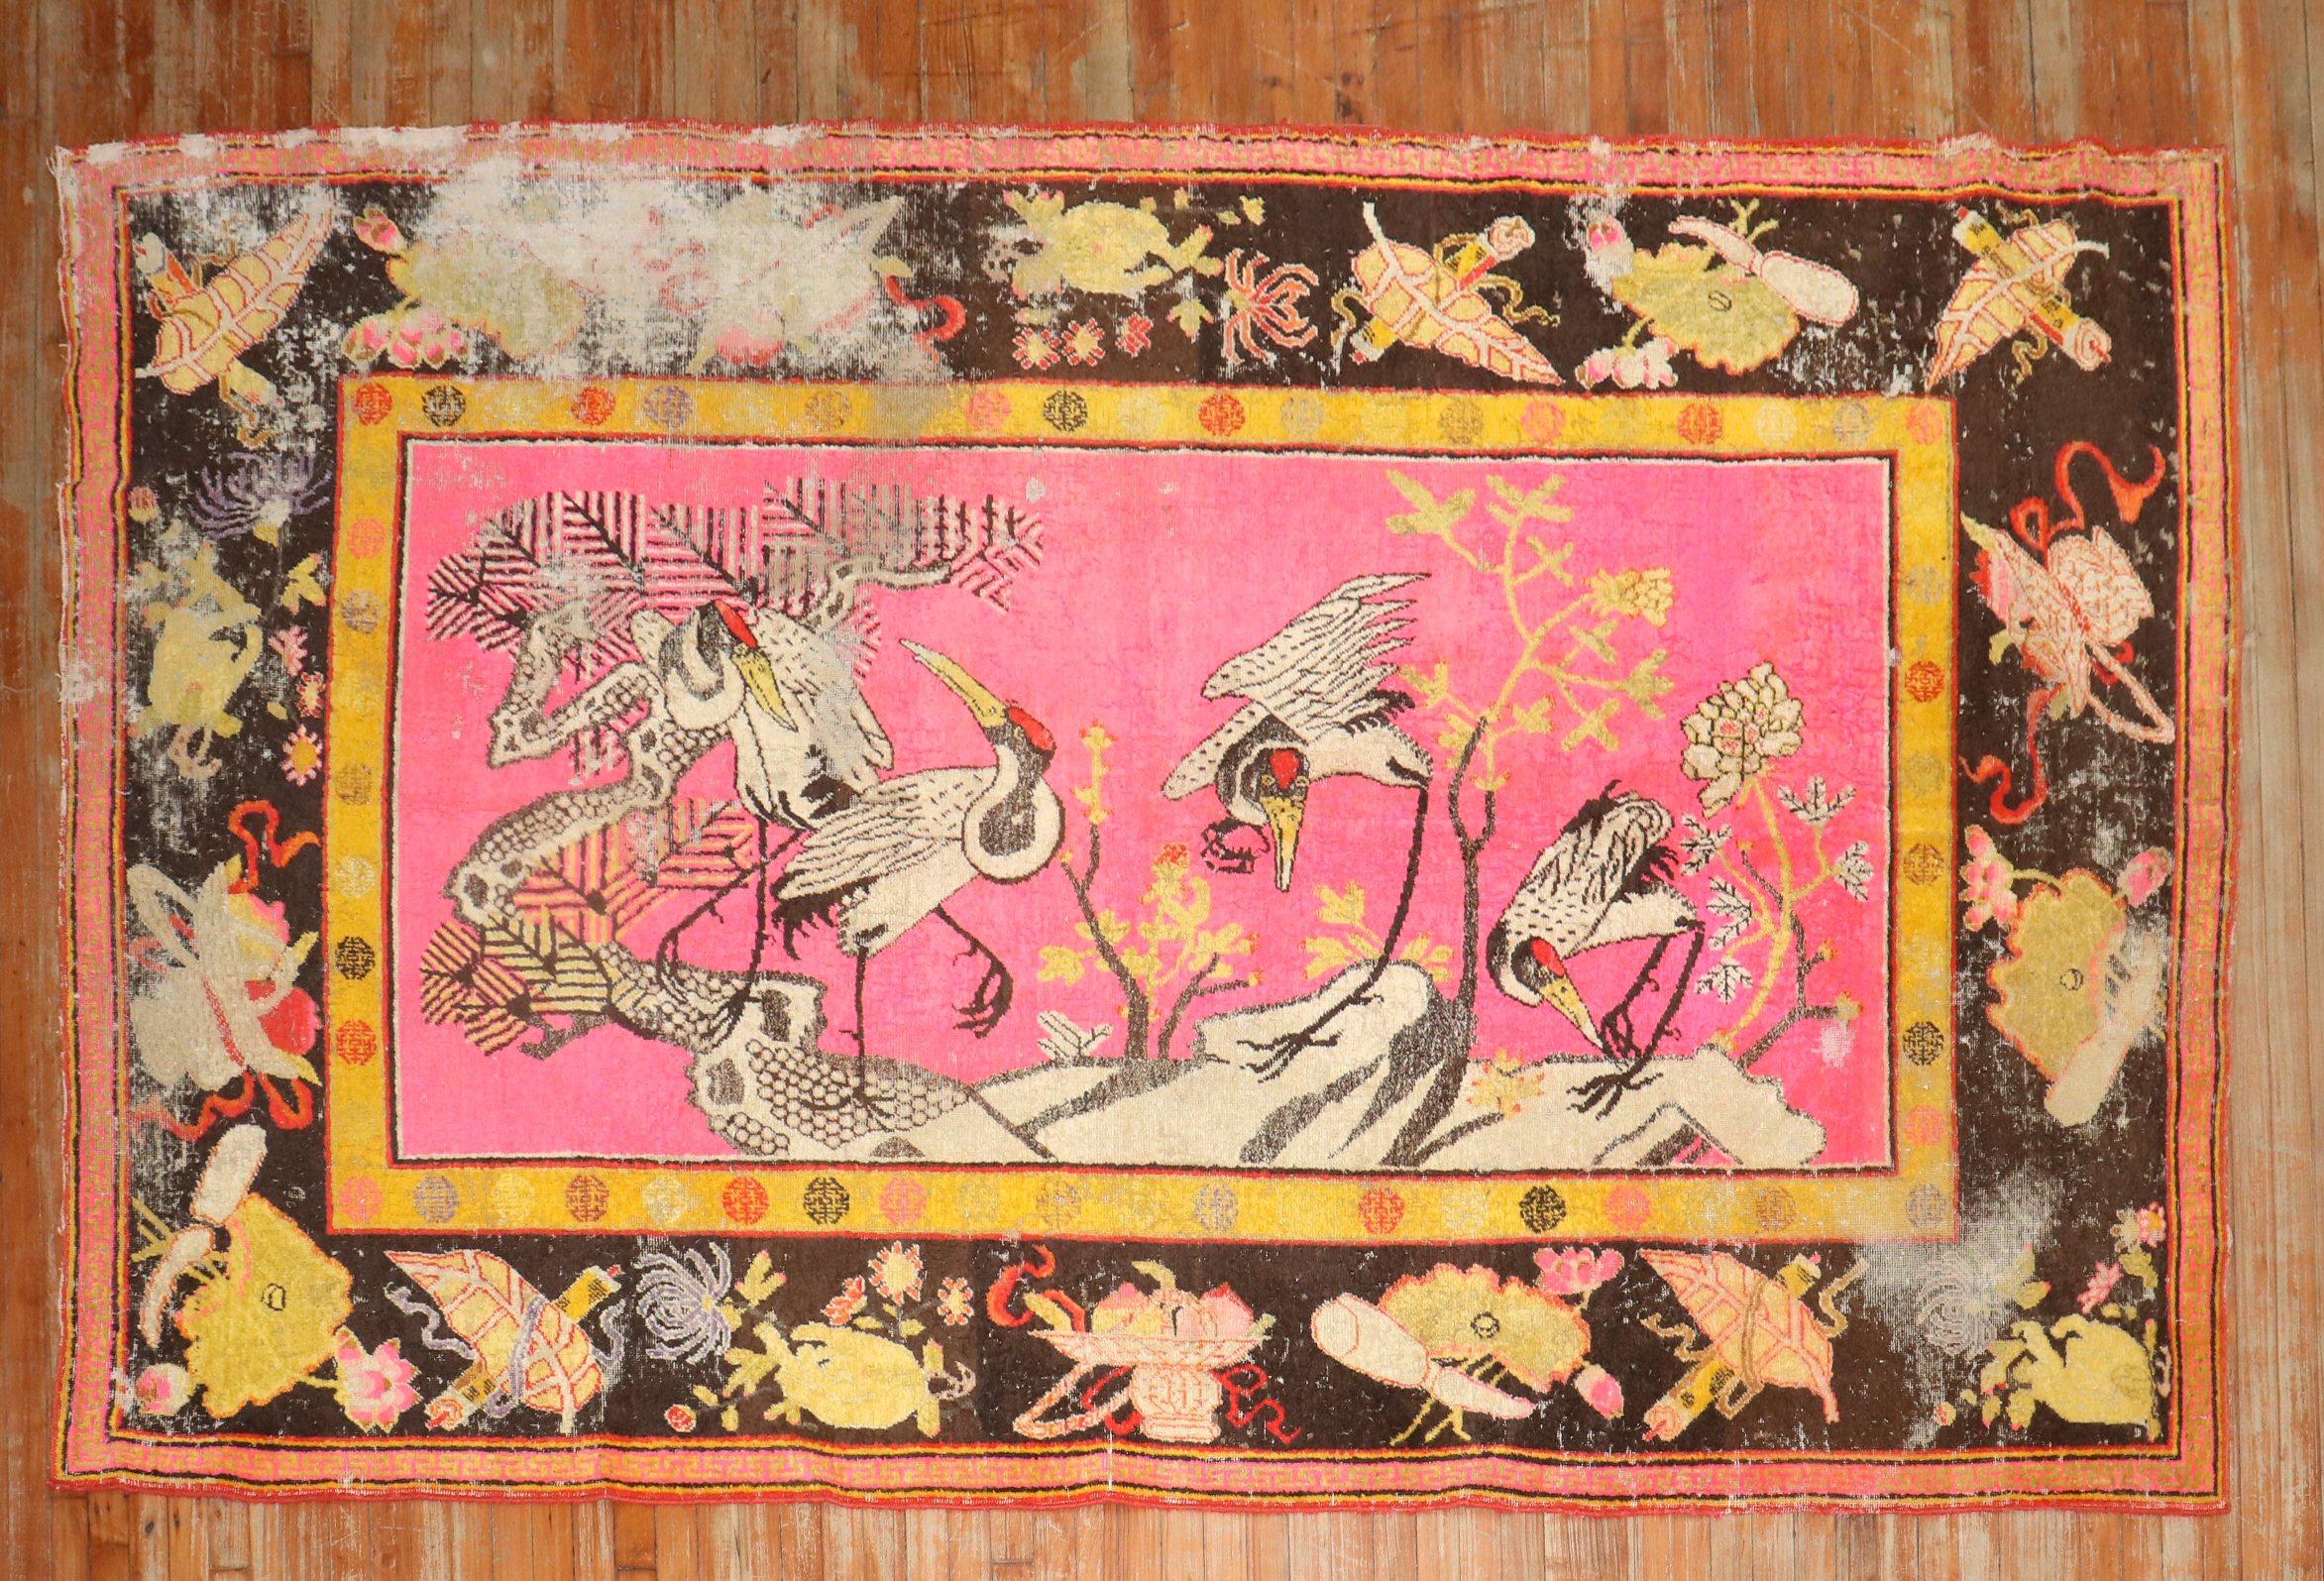 Fin du 19ème siècle, tapis khotan samarkand antique en détresse avec 4 flamants roses en vol stationnaire sur un fond rose vif

5'10'' x 10'.

